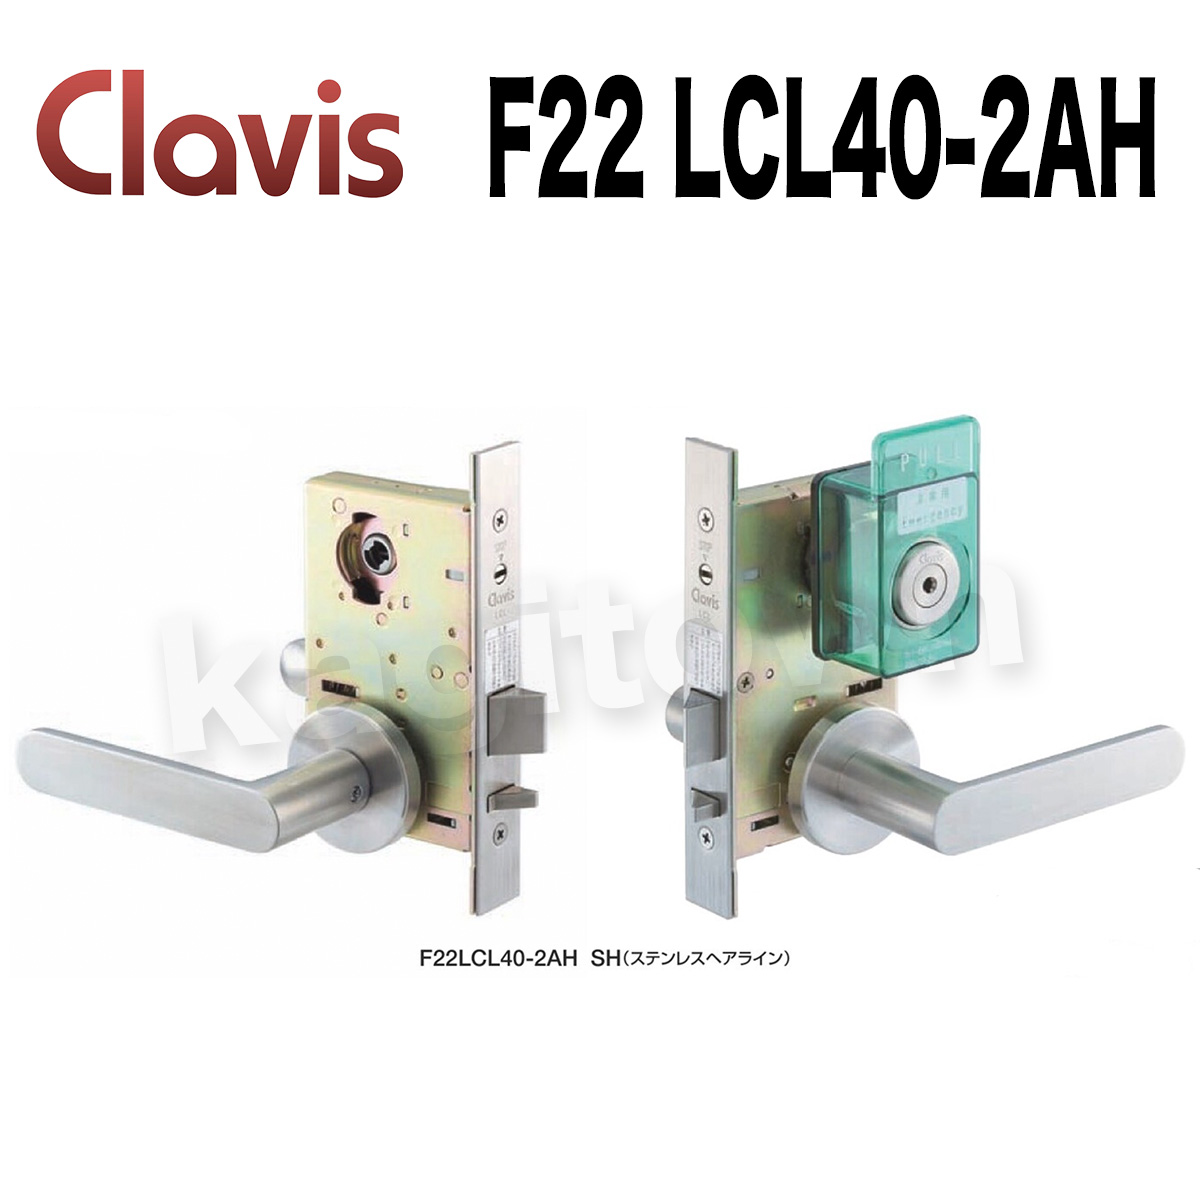 Clavis F22 LCL40-2AH【クラビス】レバーハンドル錠 納期1~4週間 非常開付シリンダー